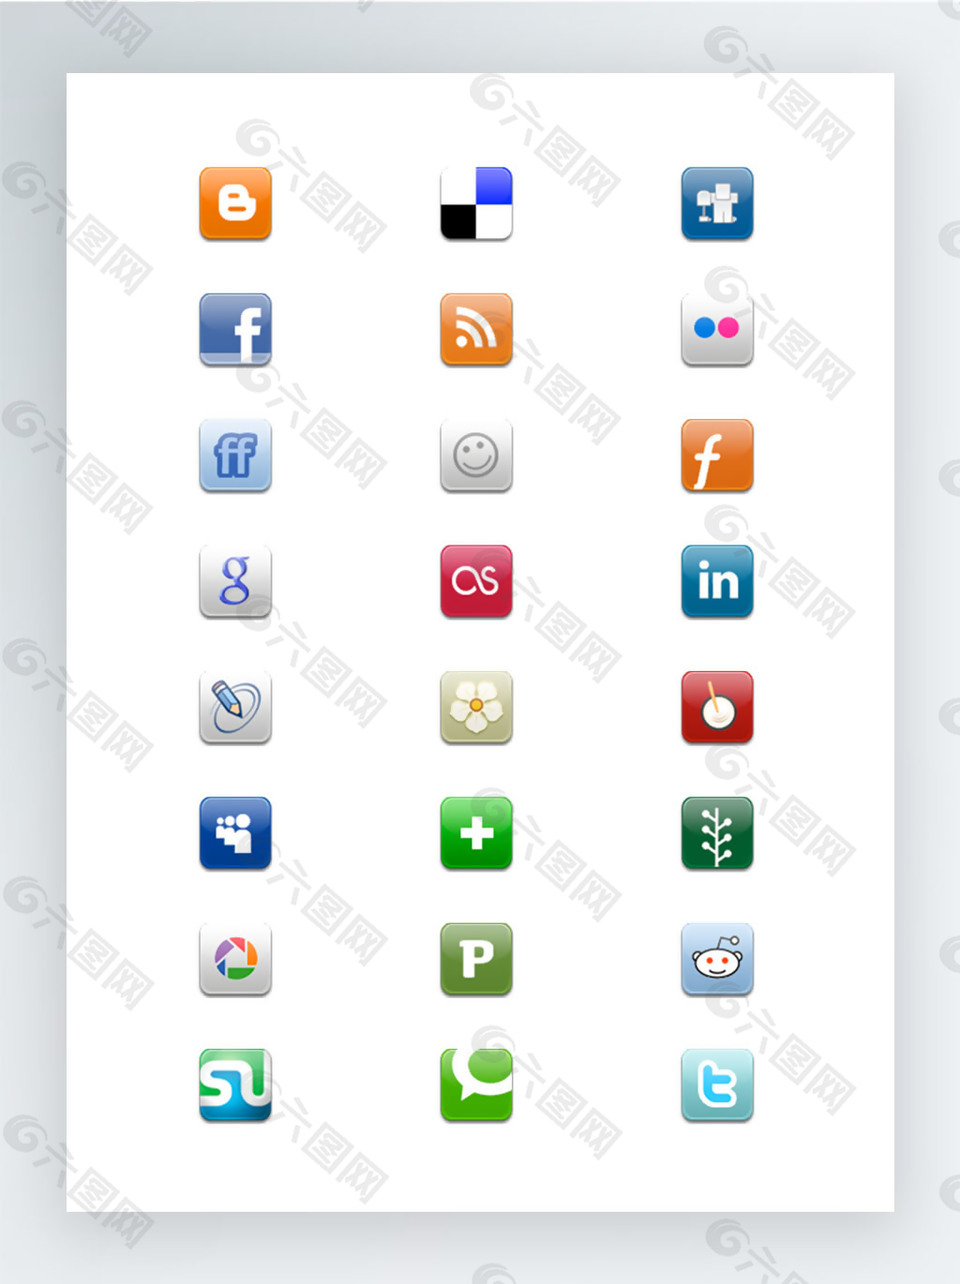 社交媒体软件图标合集